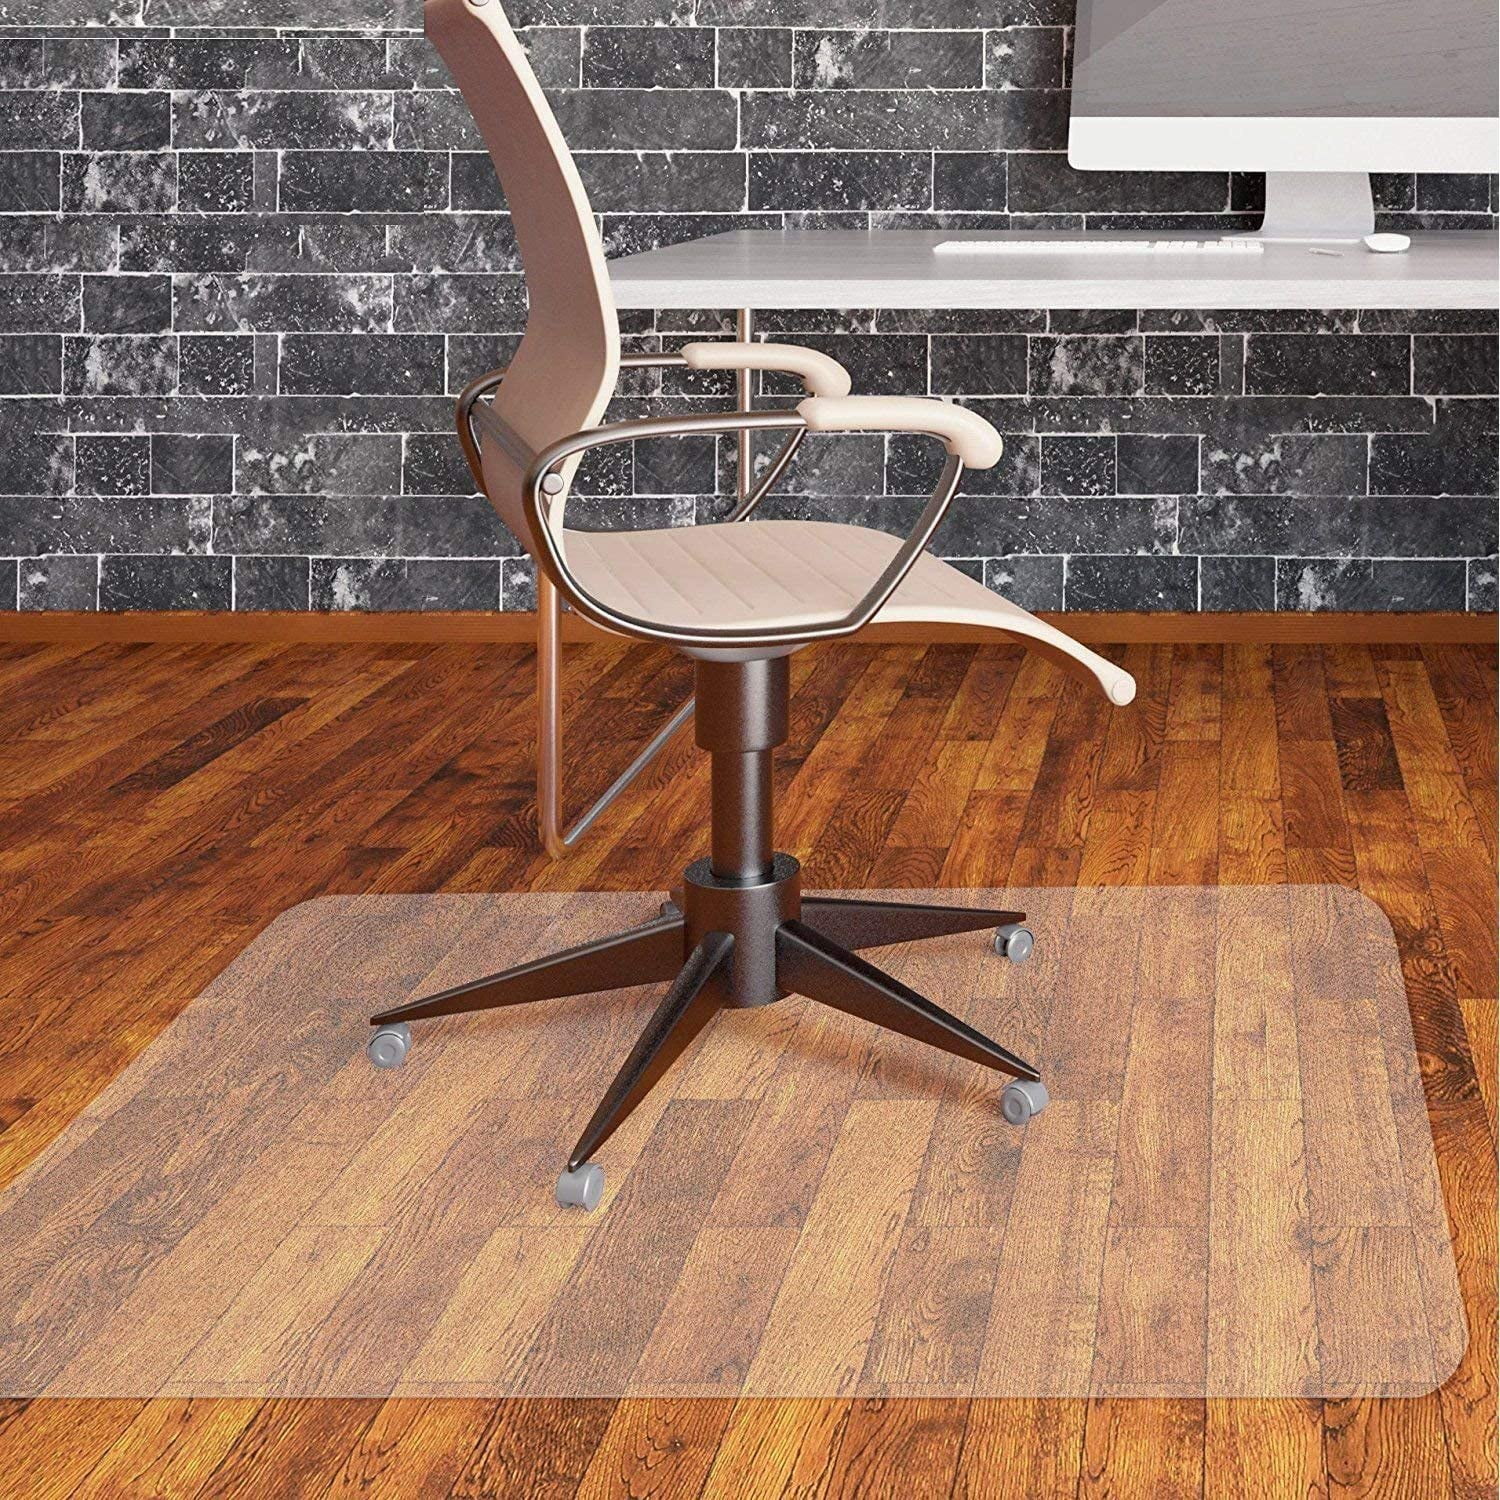 48"x36" Plastic Hard Floor Mat Protector Office Chair Wood Floor Computer Desk 